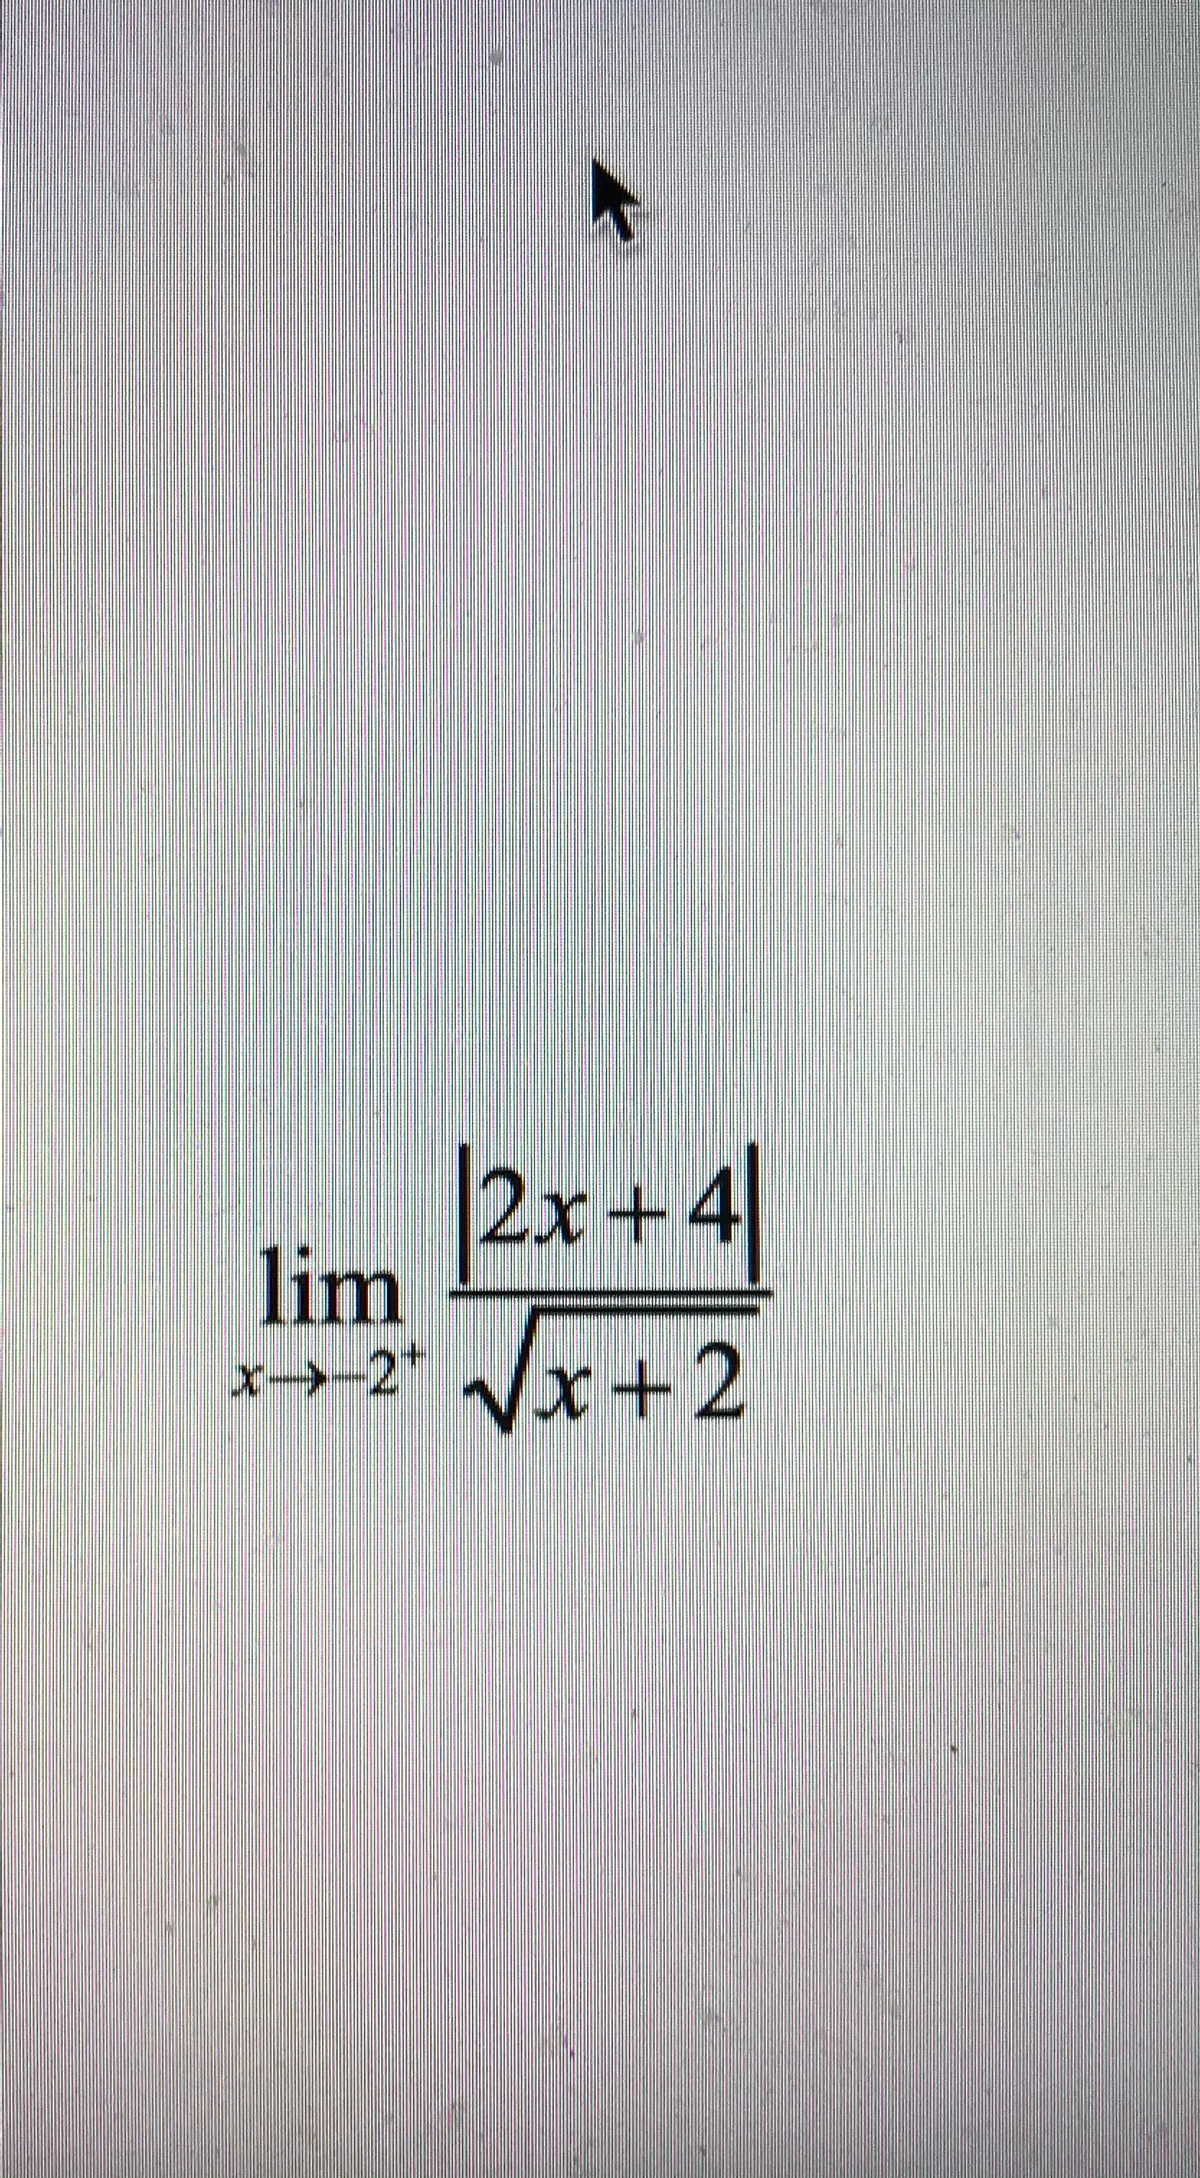 |2x+4|
lim
x->-2+ √x+2